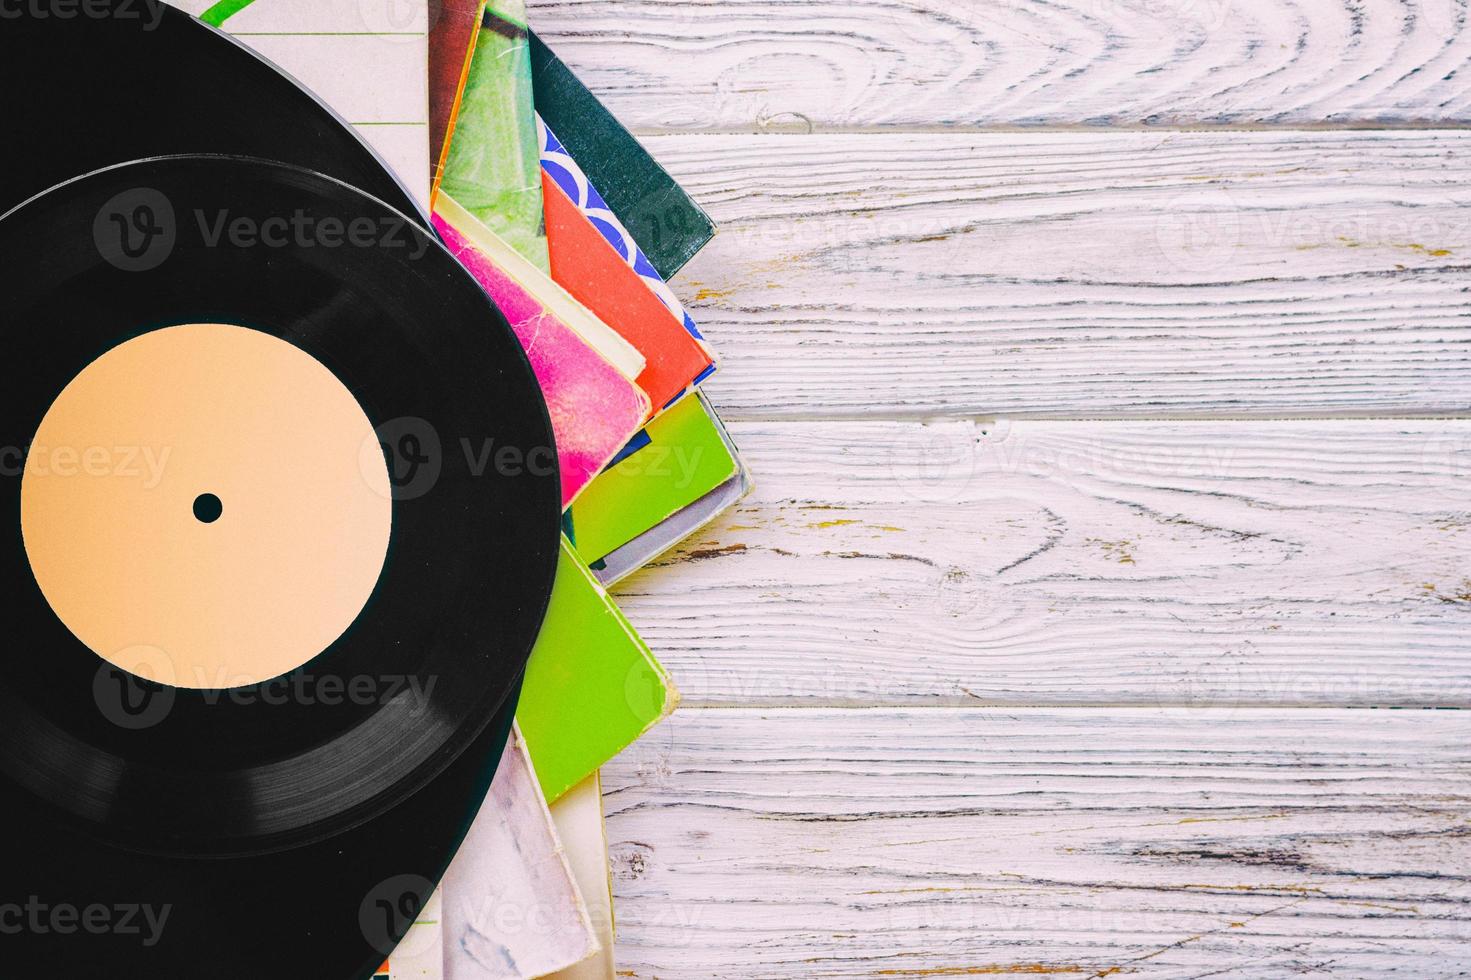 imagen de estilo retro de una colección de discos de vinilo antiguos lp con fundas sobre un fondo de madera con espacio de copia en la parte superior tonificada foto